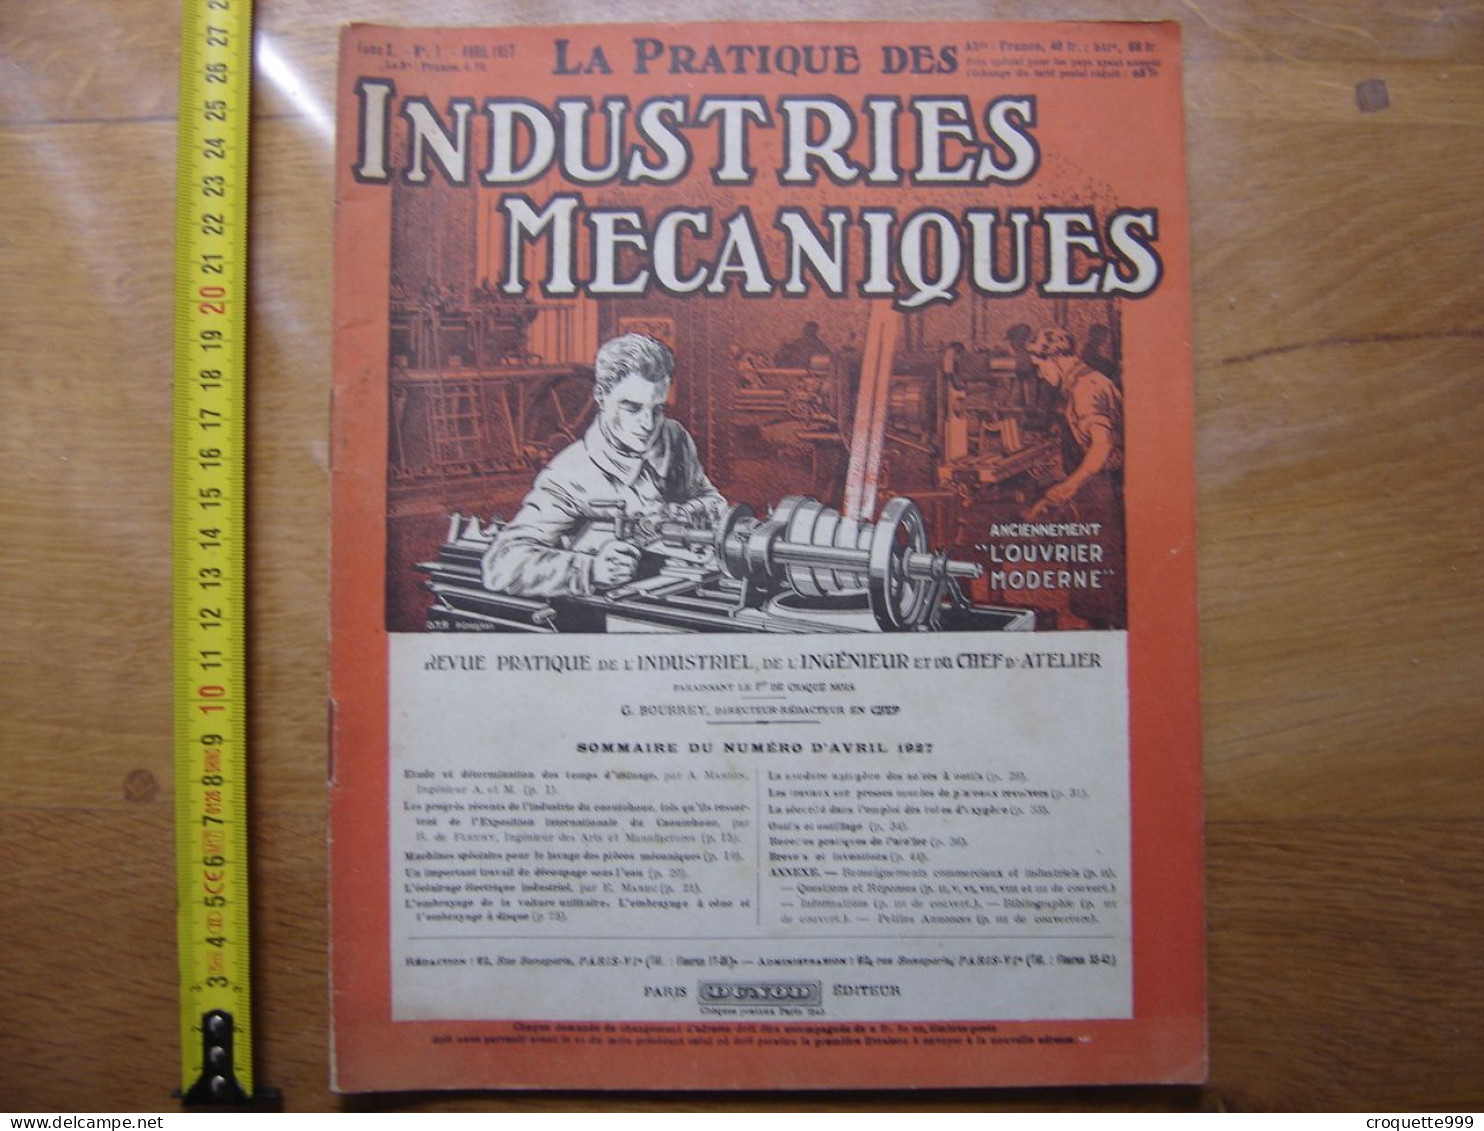 1927 Revue 1 Pratique Des Industries Mecaniques INGENIEUR CONTREMAITRE OUVRIER - Do-it-yourself / Technical